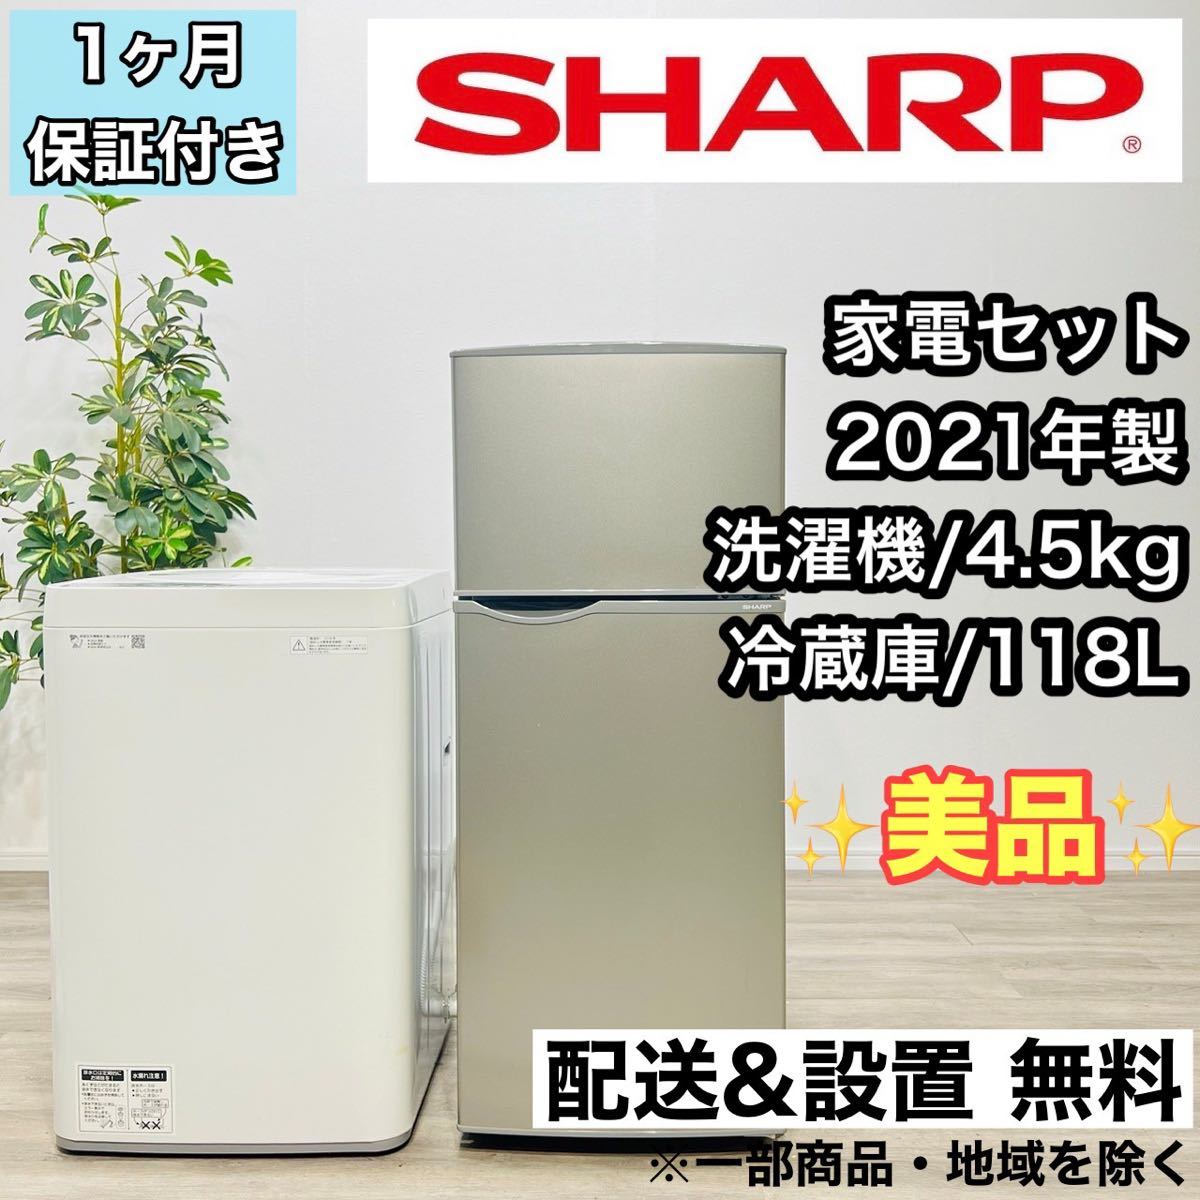 新しい季節 SHARP a1778 - 洗濯機 冷蔵庫 家電セット 100リットル